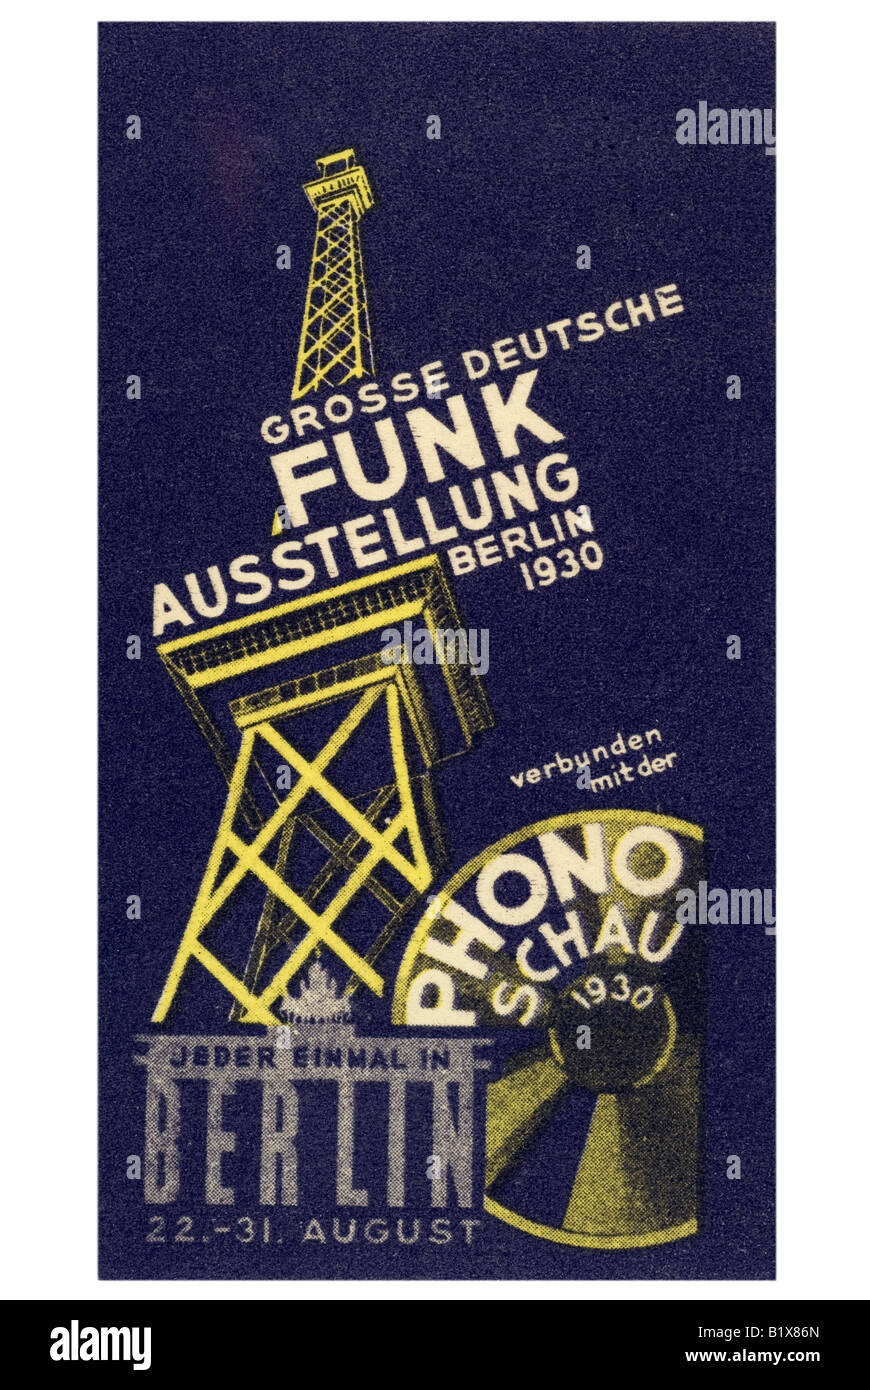 Grosse Deutsche Funkausstellung Berlin 1930 Verbunden Mit der Phonoschau 1930 Stockfoto